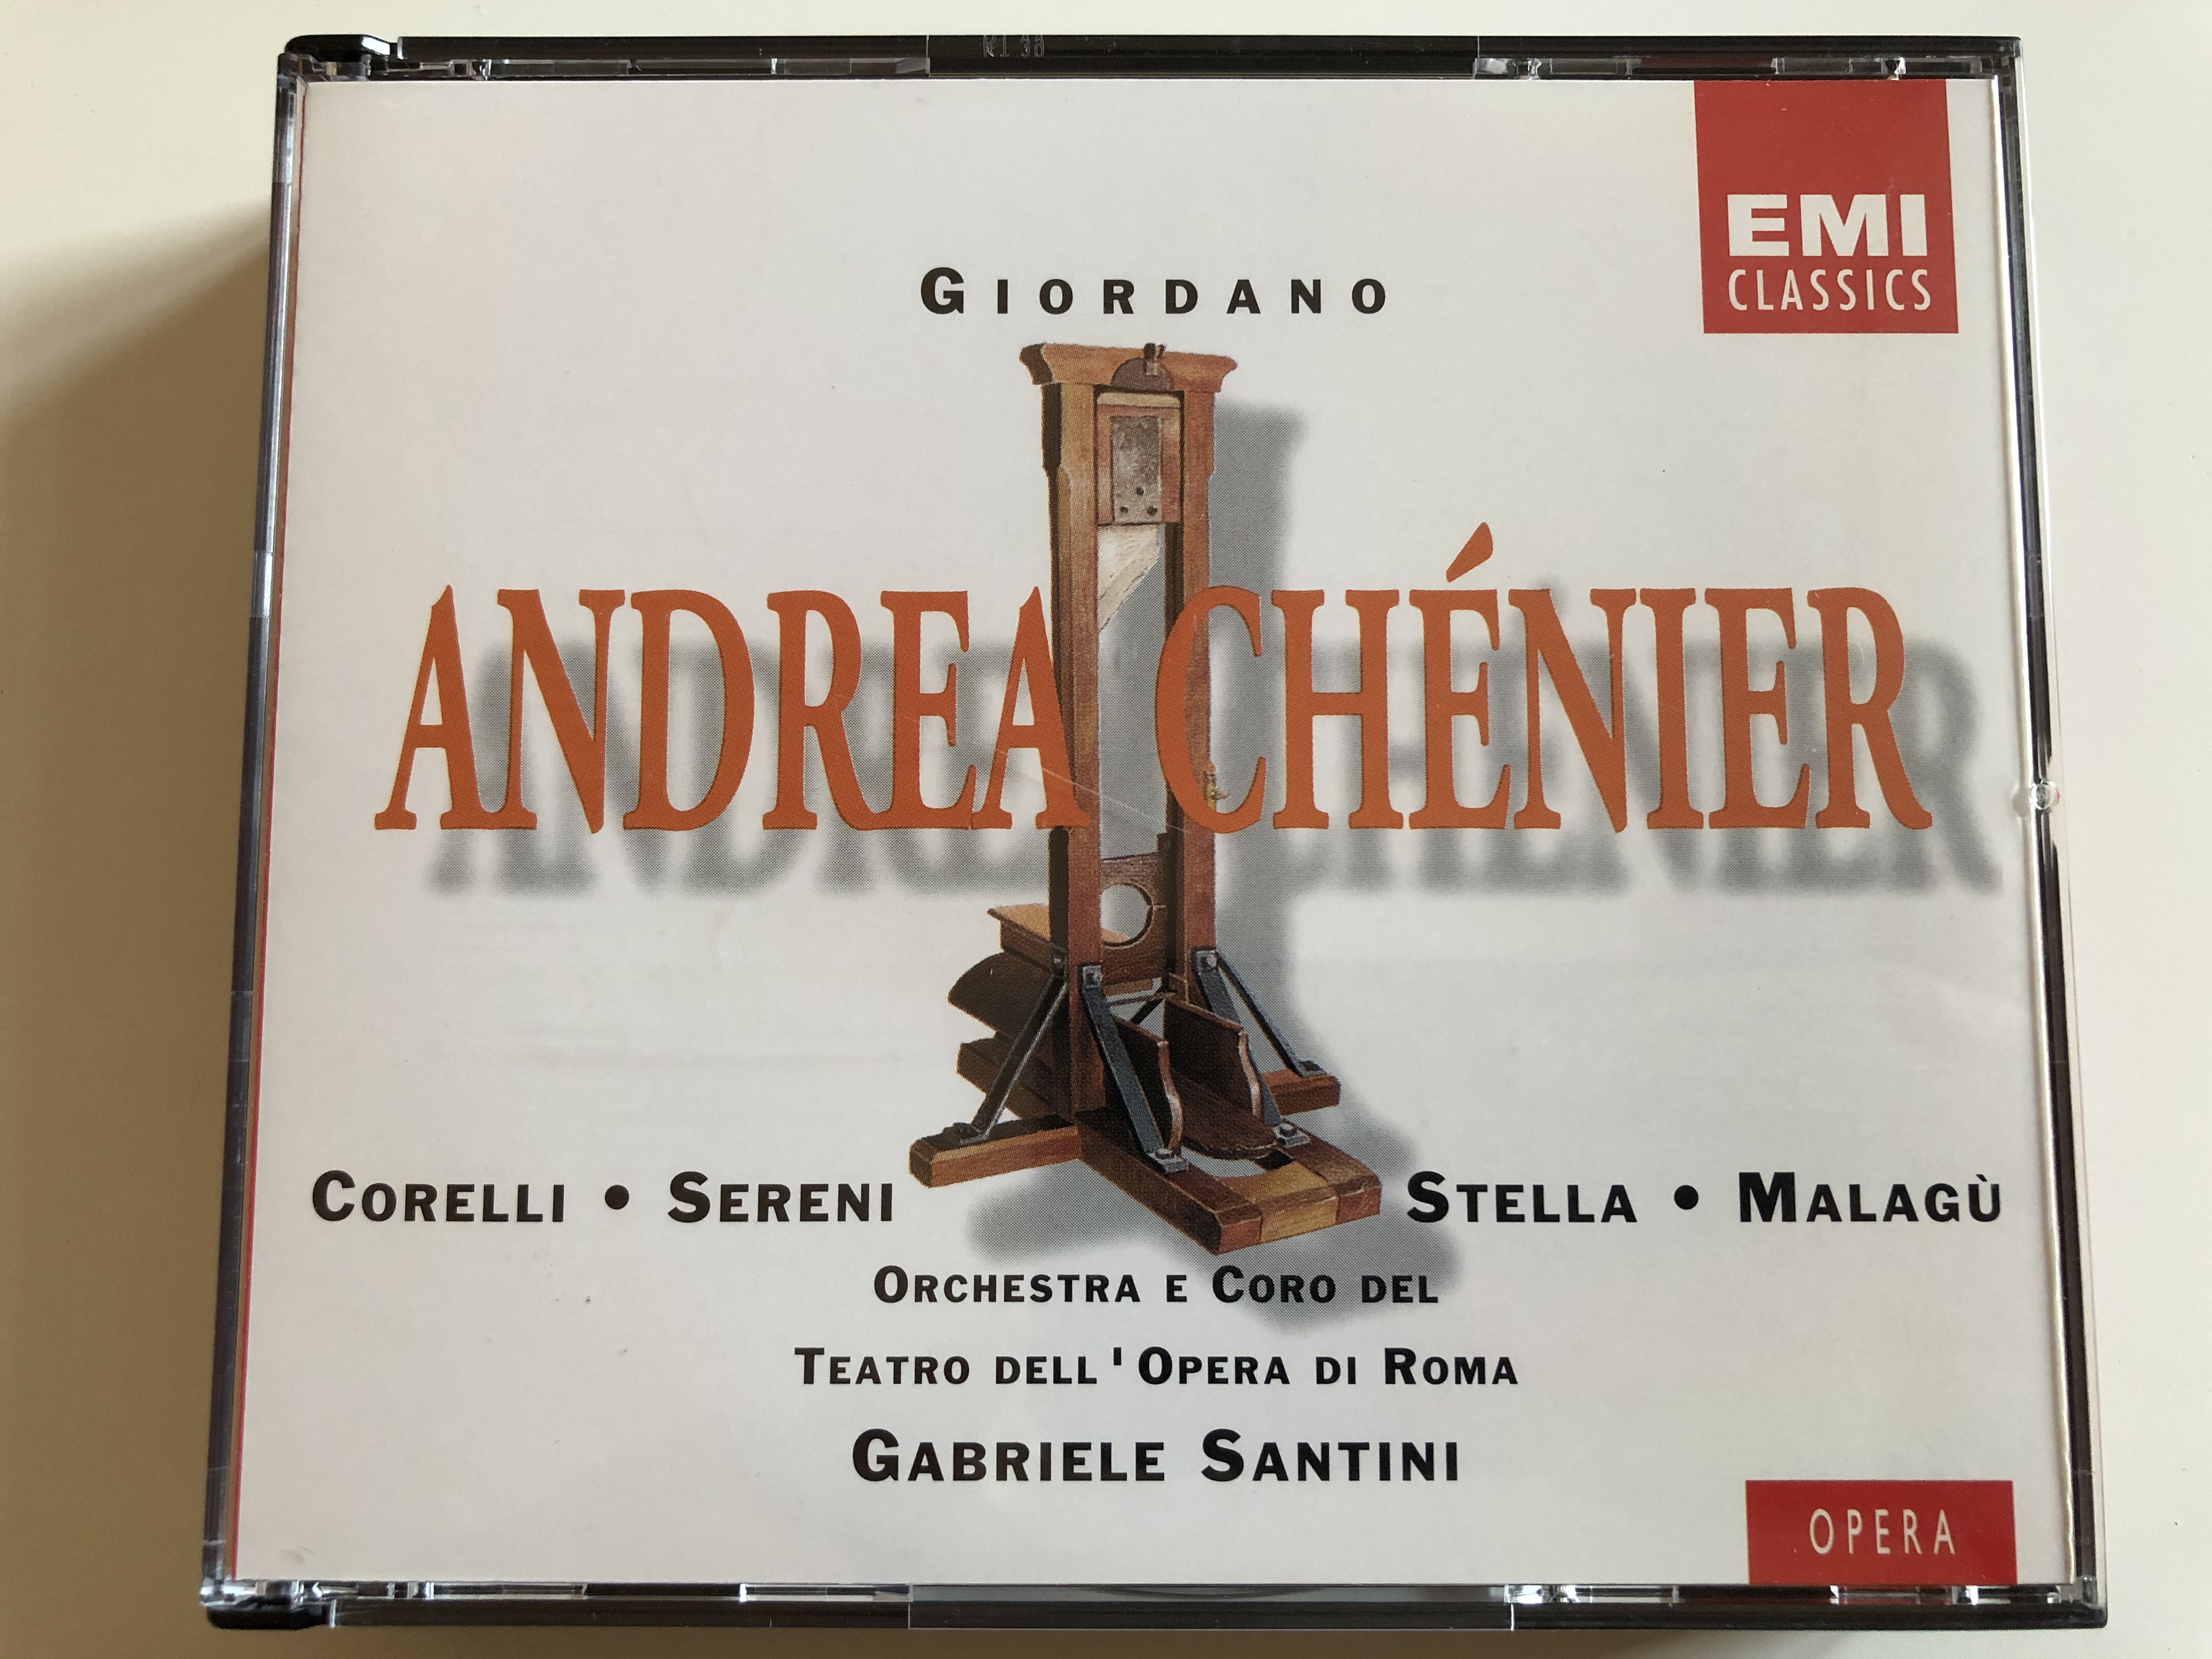 giordano-andrea-ch-nier-corelli-sereni-stella-malag-orchestra-e-coro-del-teatro-dell-opera-di-roma-gabriele-santini-emi-records-ltd.-2x-audio-cd-1994-stereo-cms-5-65287-2-1-.jpg